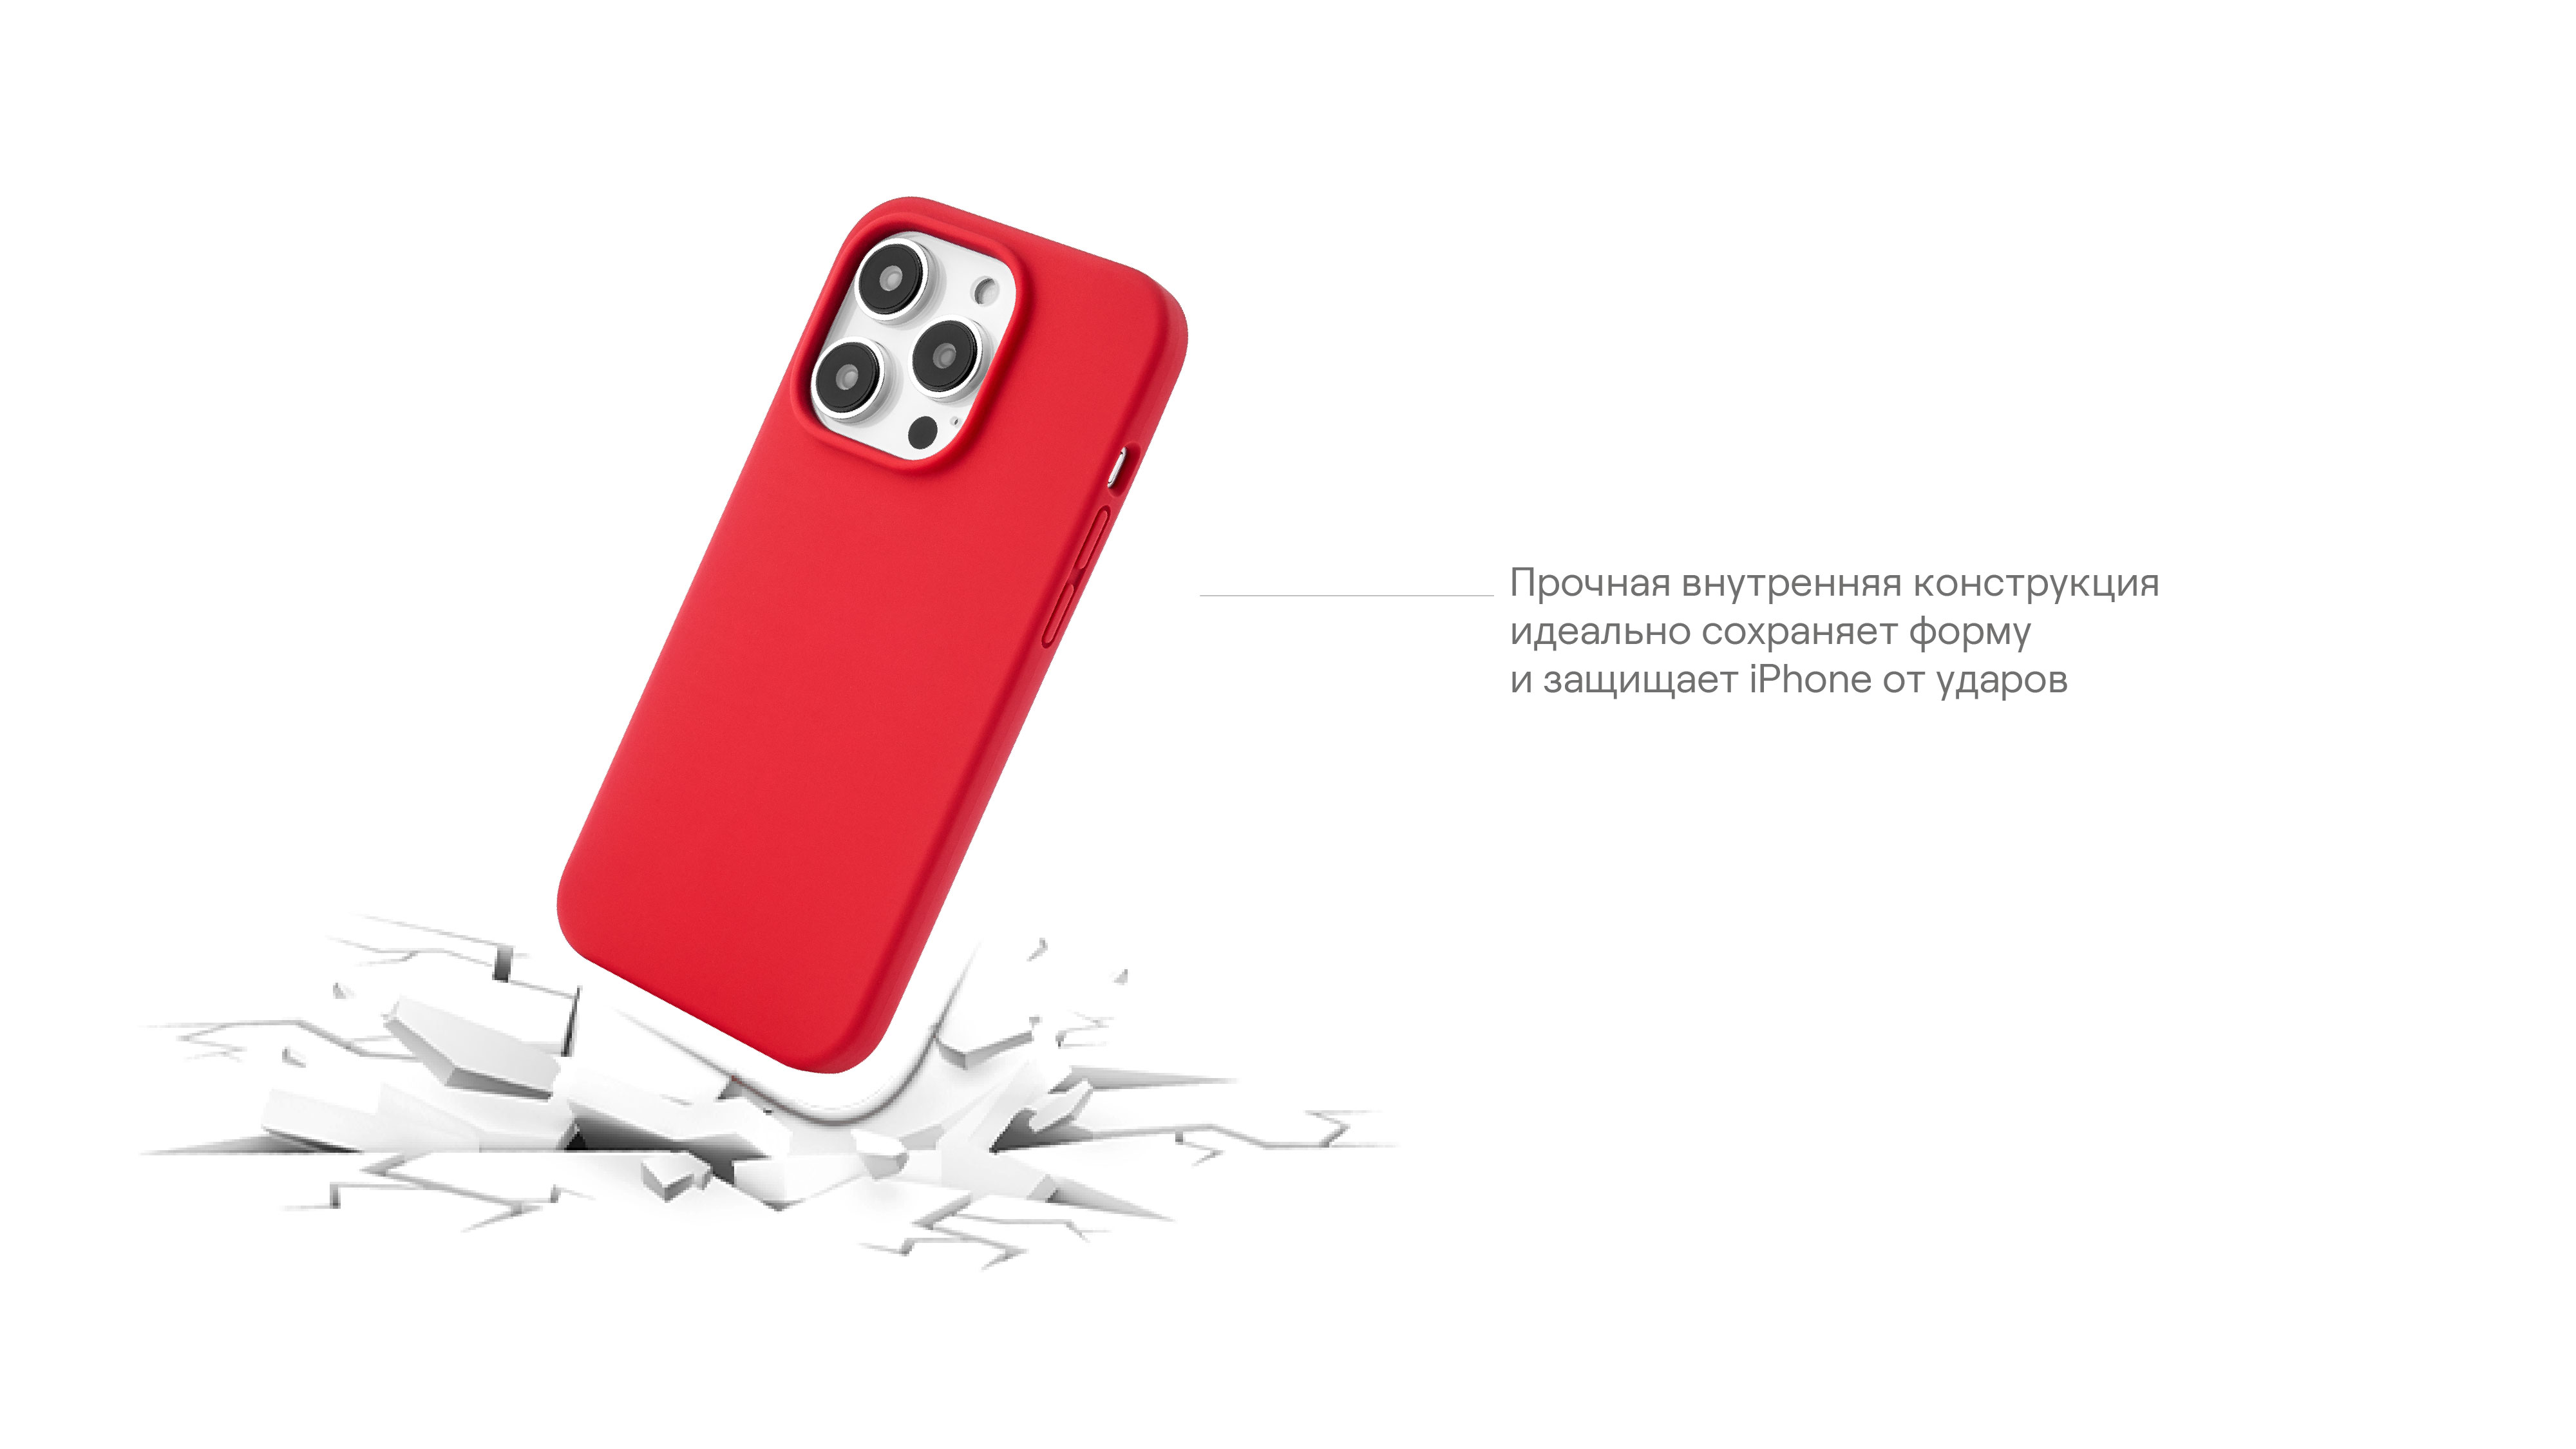 Чехол защитный uBear Touch Case для  iPhone 14, силикон, софт-тач, красный